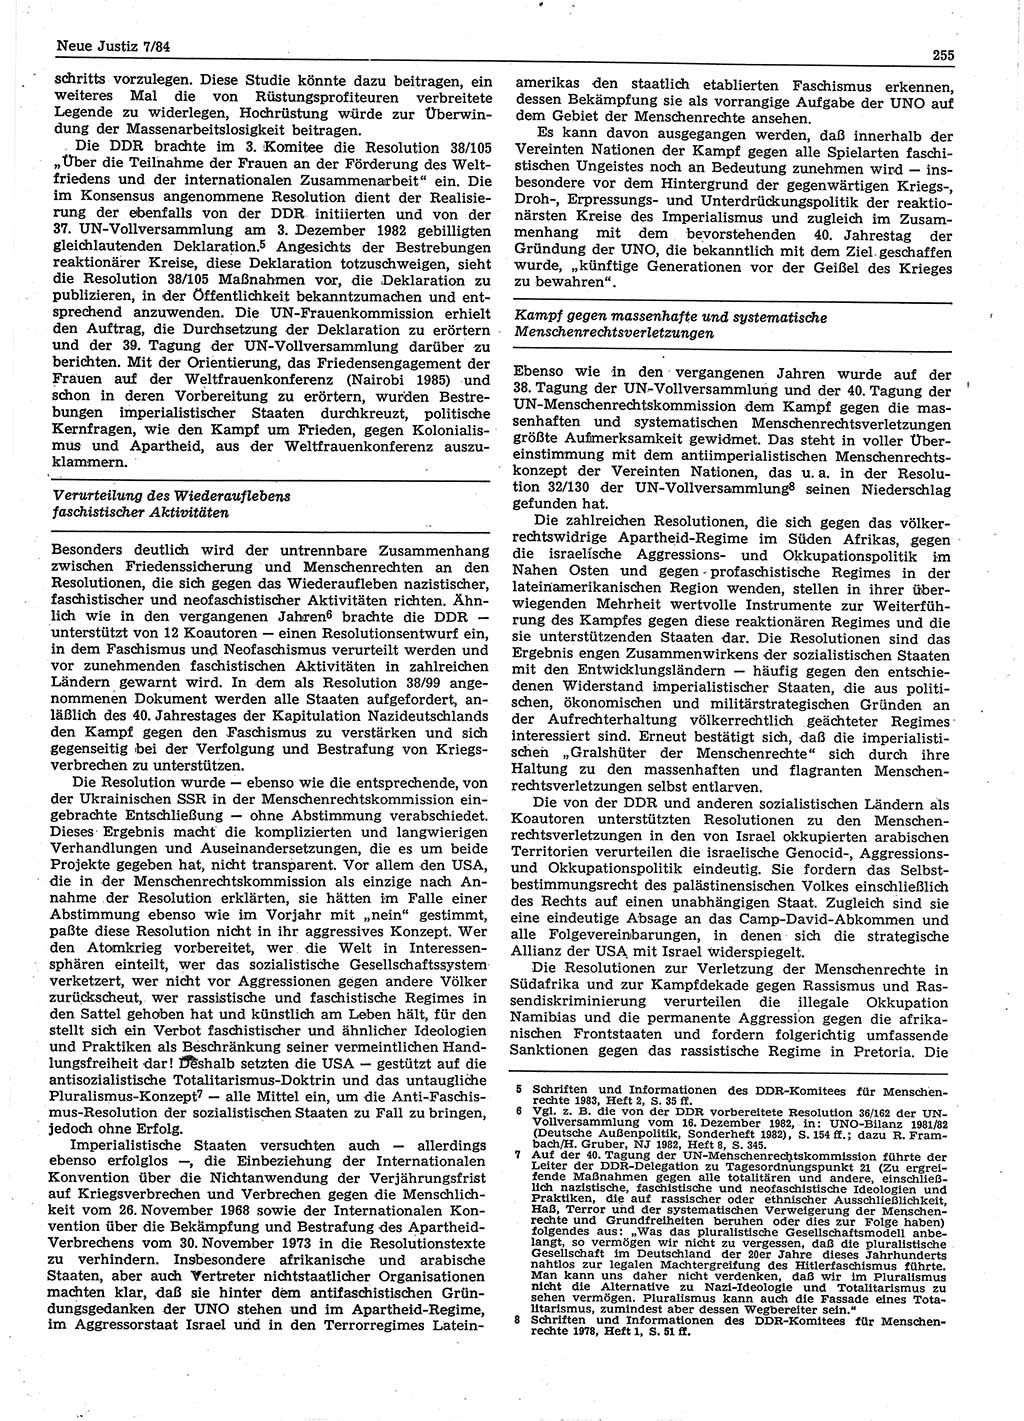 Neue Justiz (NJ), Zeitschrift für sozialistisches Recht und Gesetzlichkeit [Deutsche Demokratische Republik (DDR)], 38. Jahrgang 1984, Seite 255 (NJ DDR 1984, S. 255)